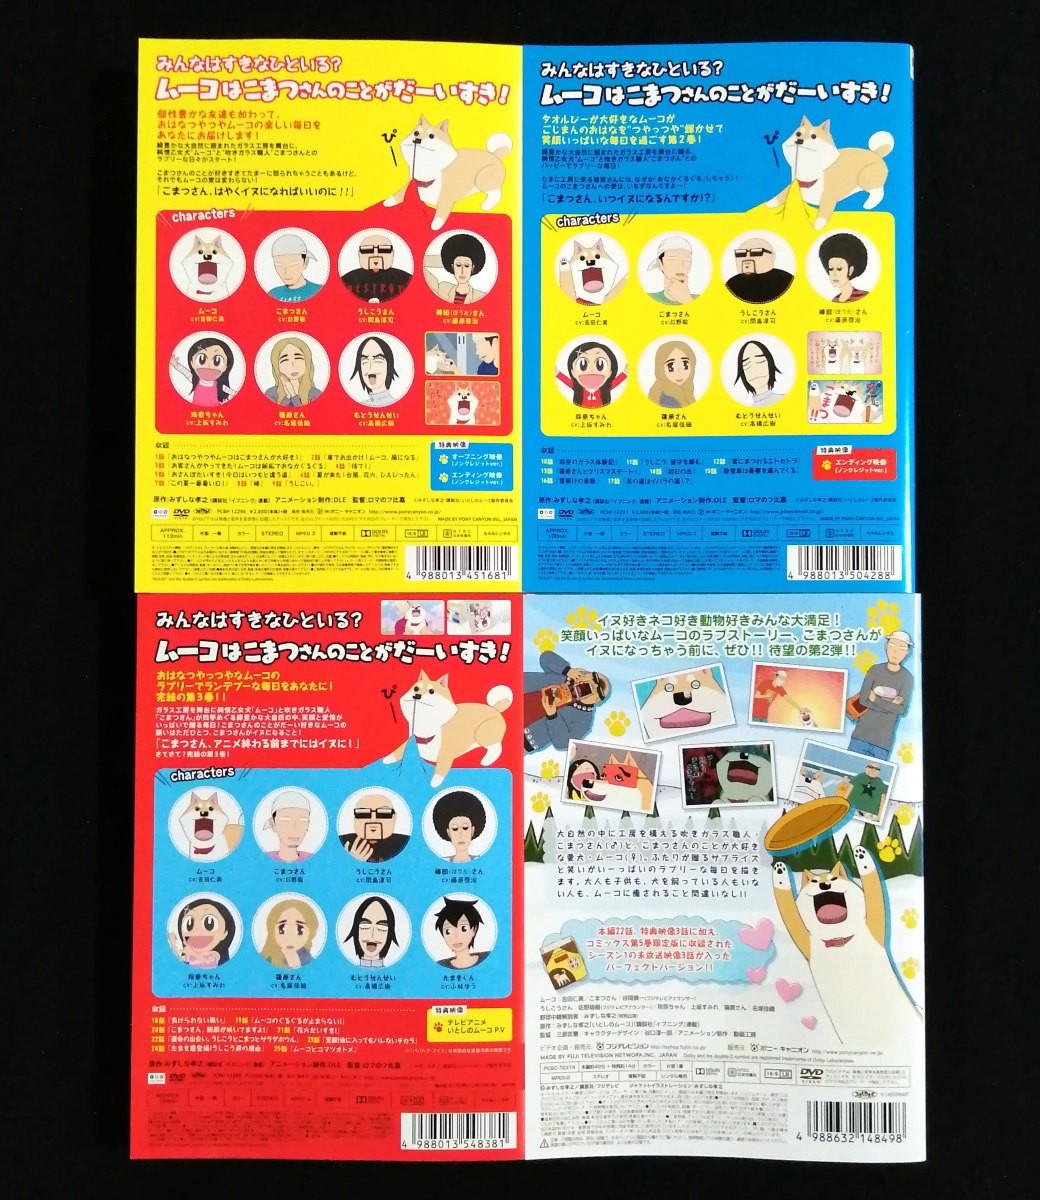 DVD 『テレビアニメ いとしのムーコ 全3巻』 &『ラブリームービー いとしのムーコ season2』 全4巻セット レンタル版